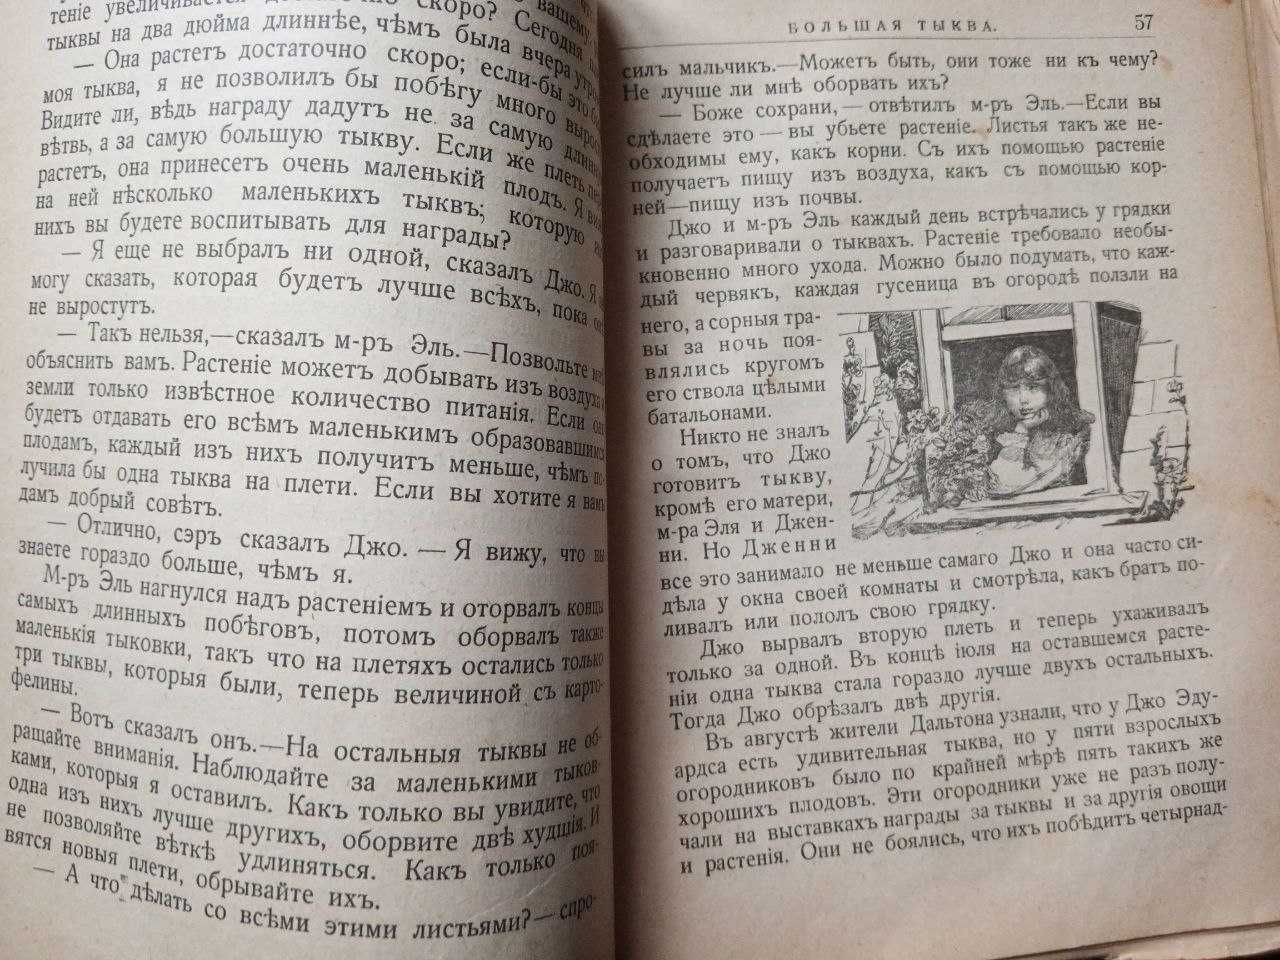 Старинная книга для детей "Чтение лучшее учение".